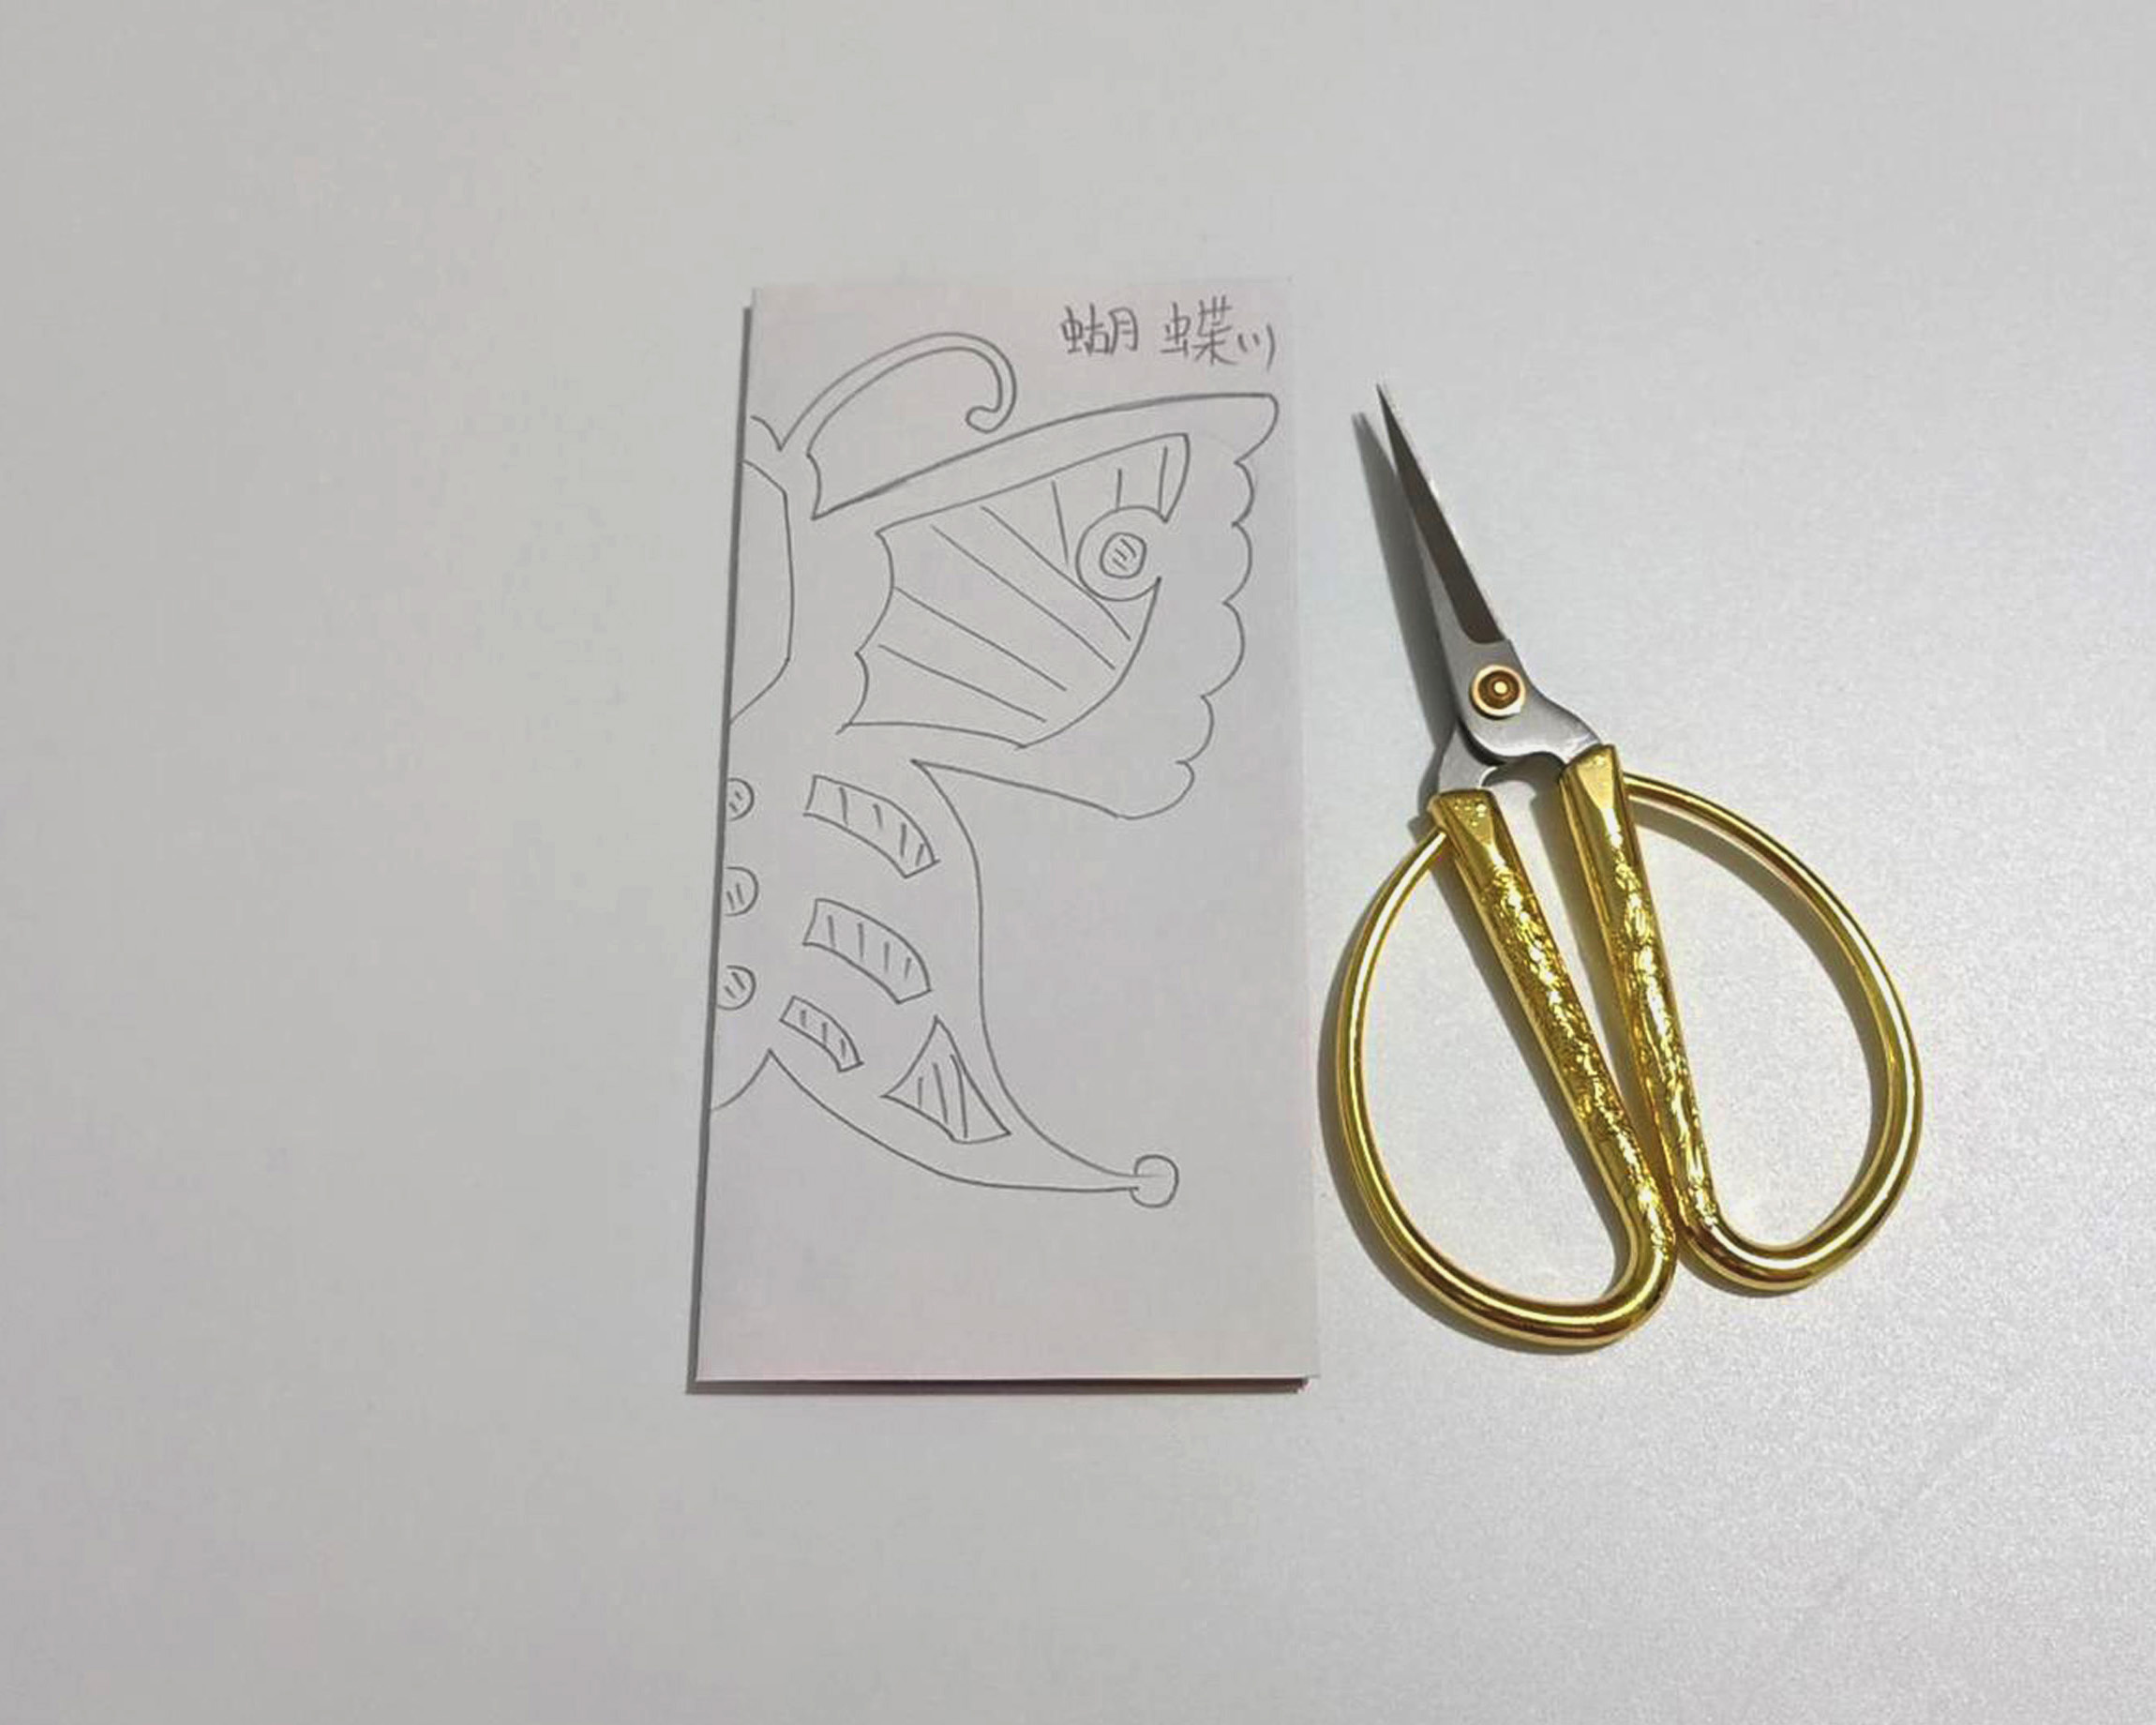 教你用彩纸来制作漂亮的蝴蝶 儿童创意DIY剪纸教程╭★肉丁网